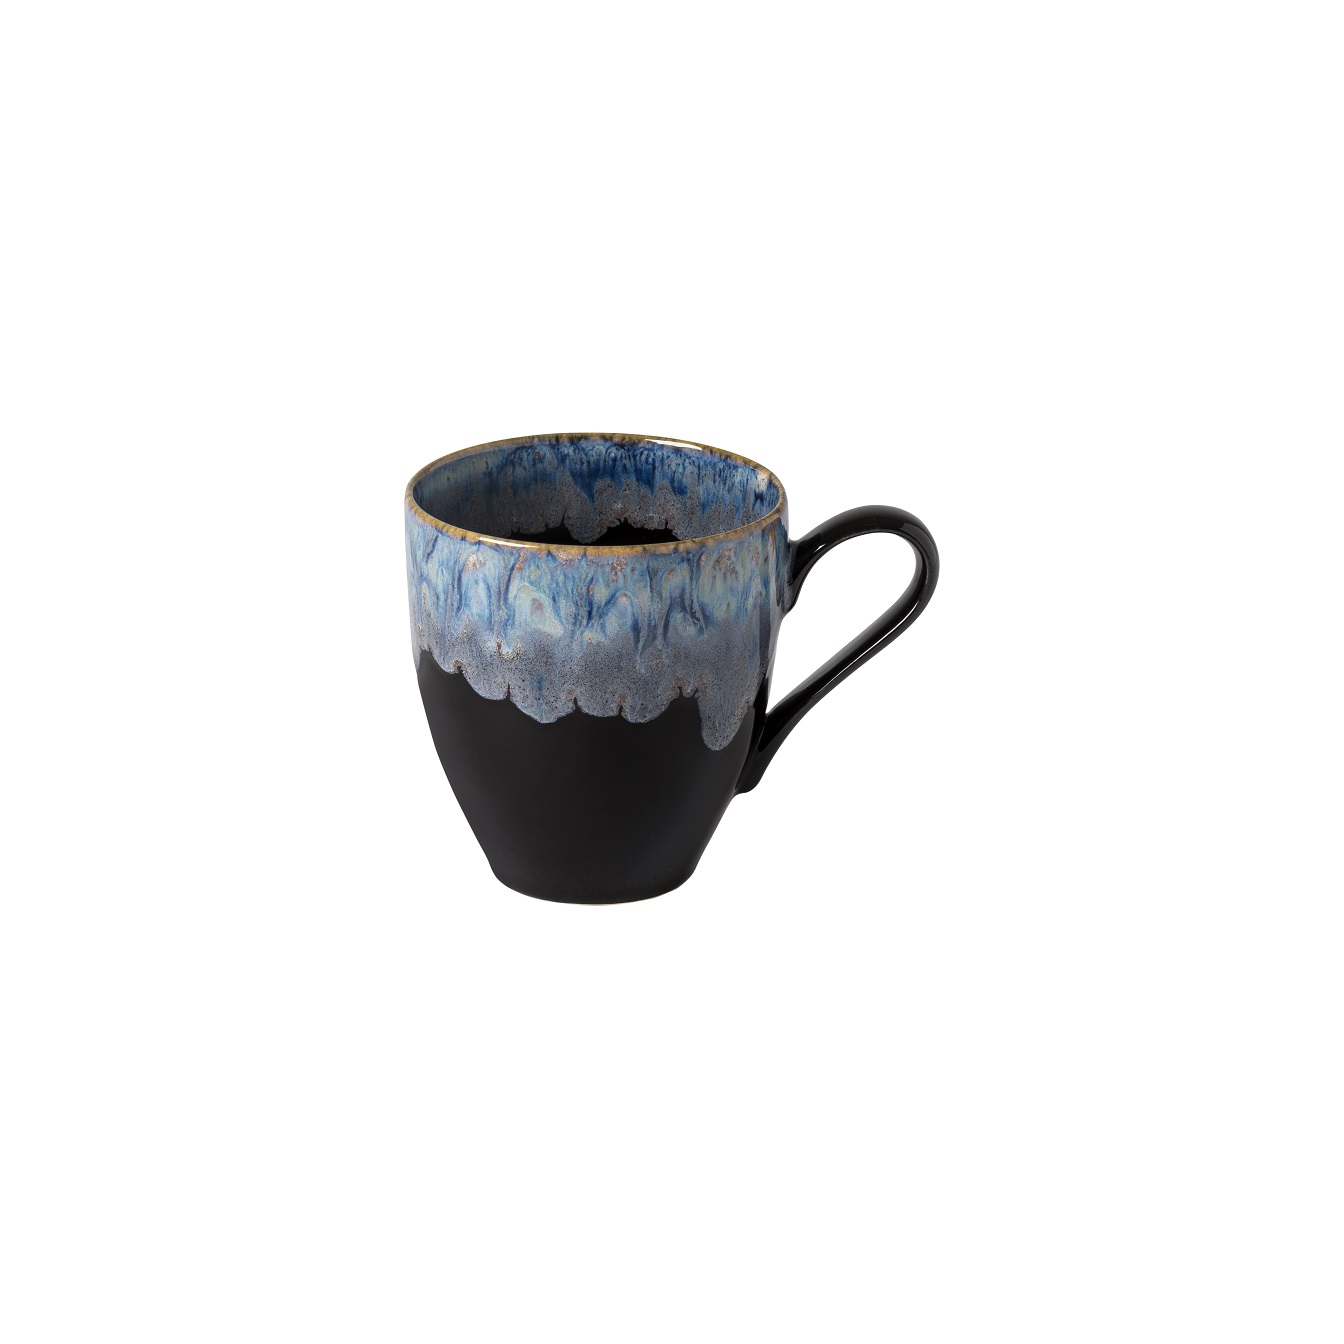 Taormina Black Mug 0.41l Gift